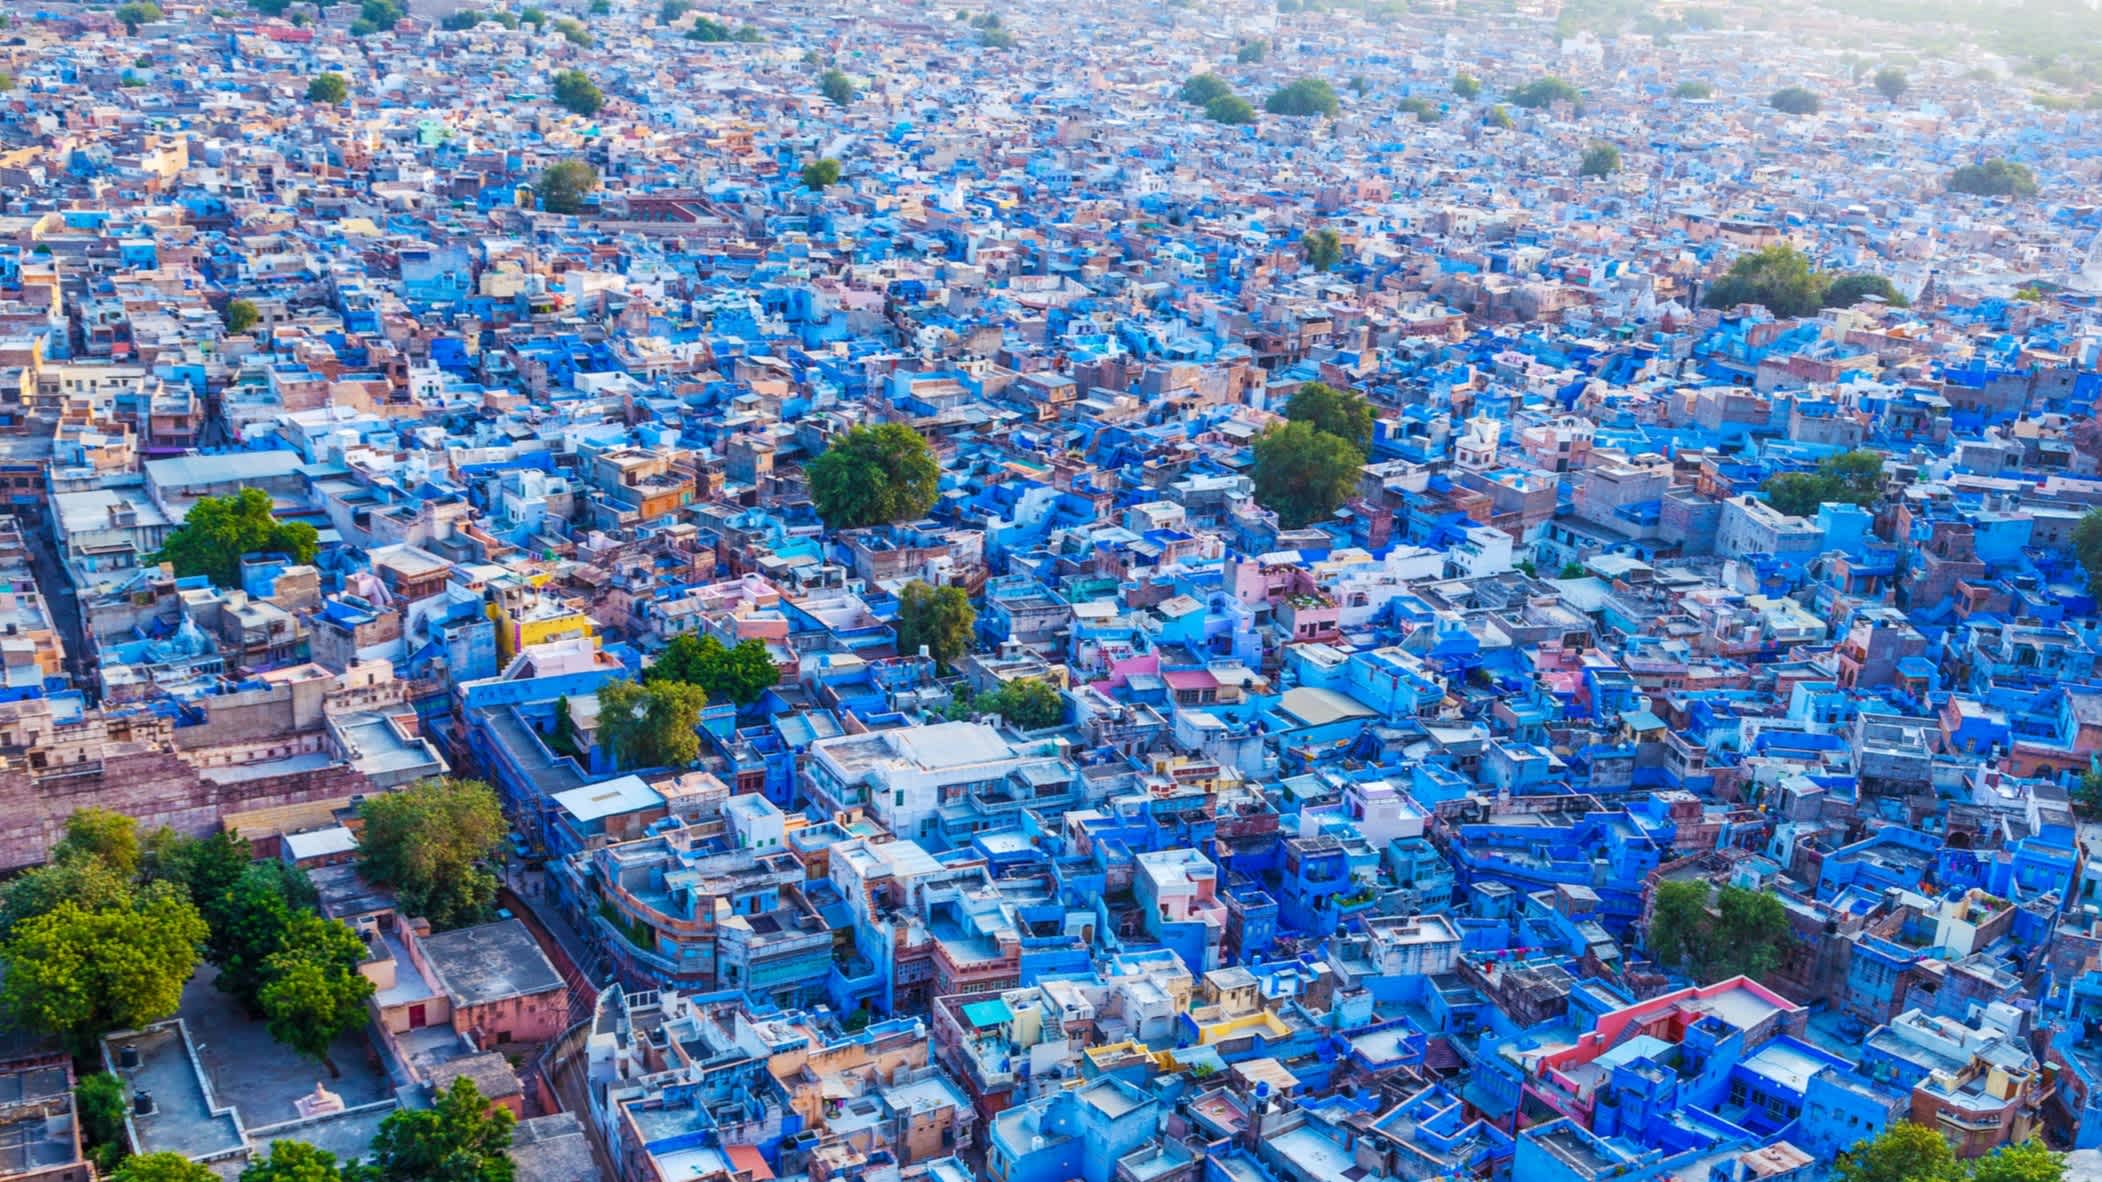 Vue aérienne sur la ville bleue de Jodhpur reconnaissable à ses maisons bleues.